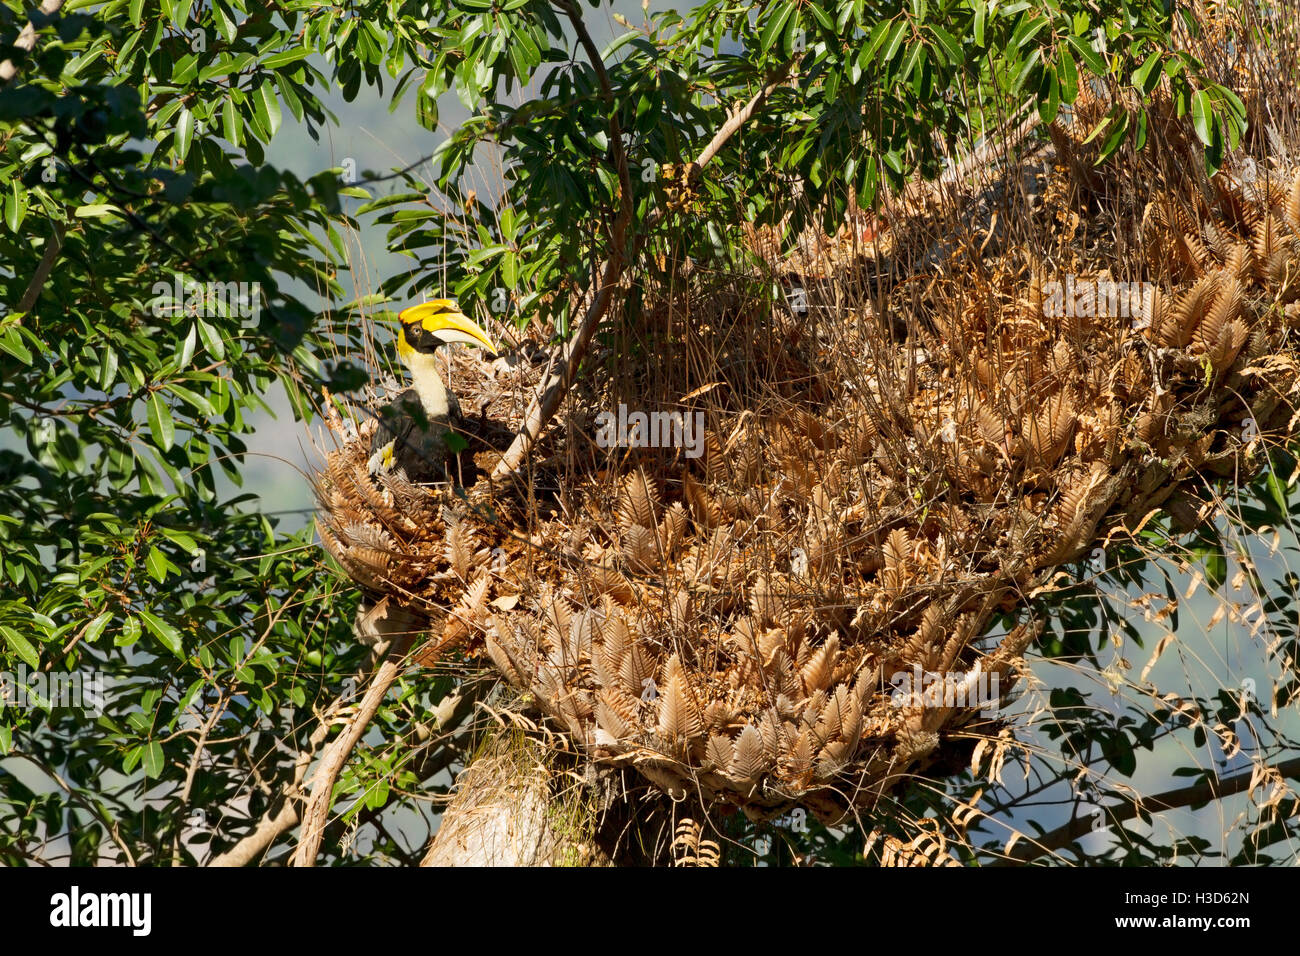 Grand calao de femelles adultes se nourrissent dans les fougères arborescentes d'un arbre de forêt tropicale, Langkawi, Malaisie Banque D'Images